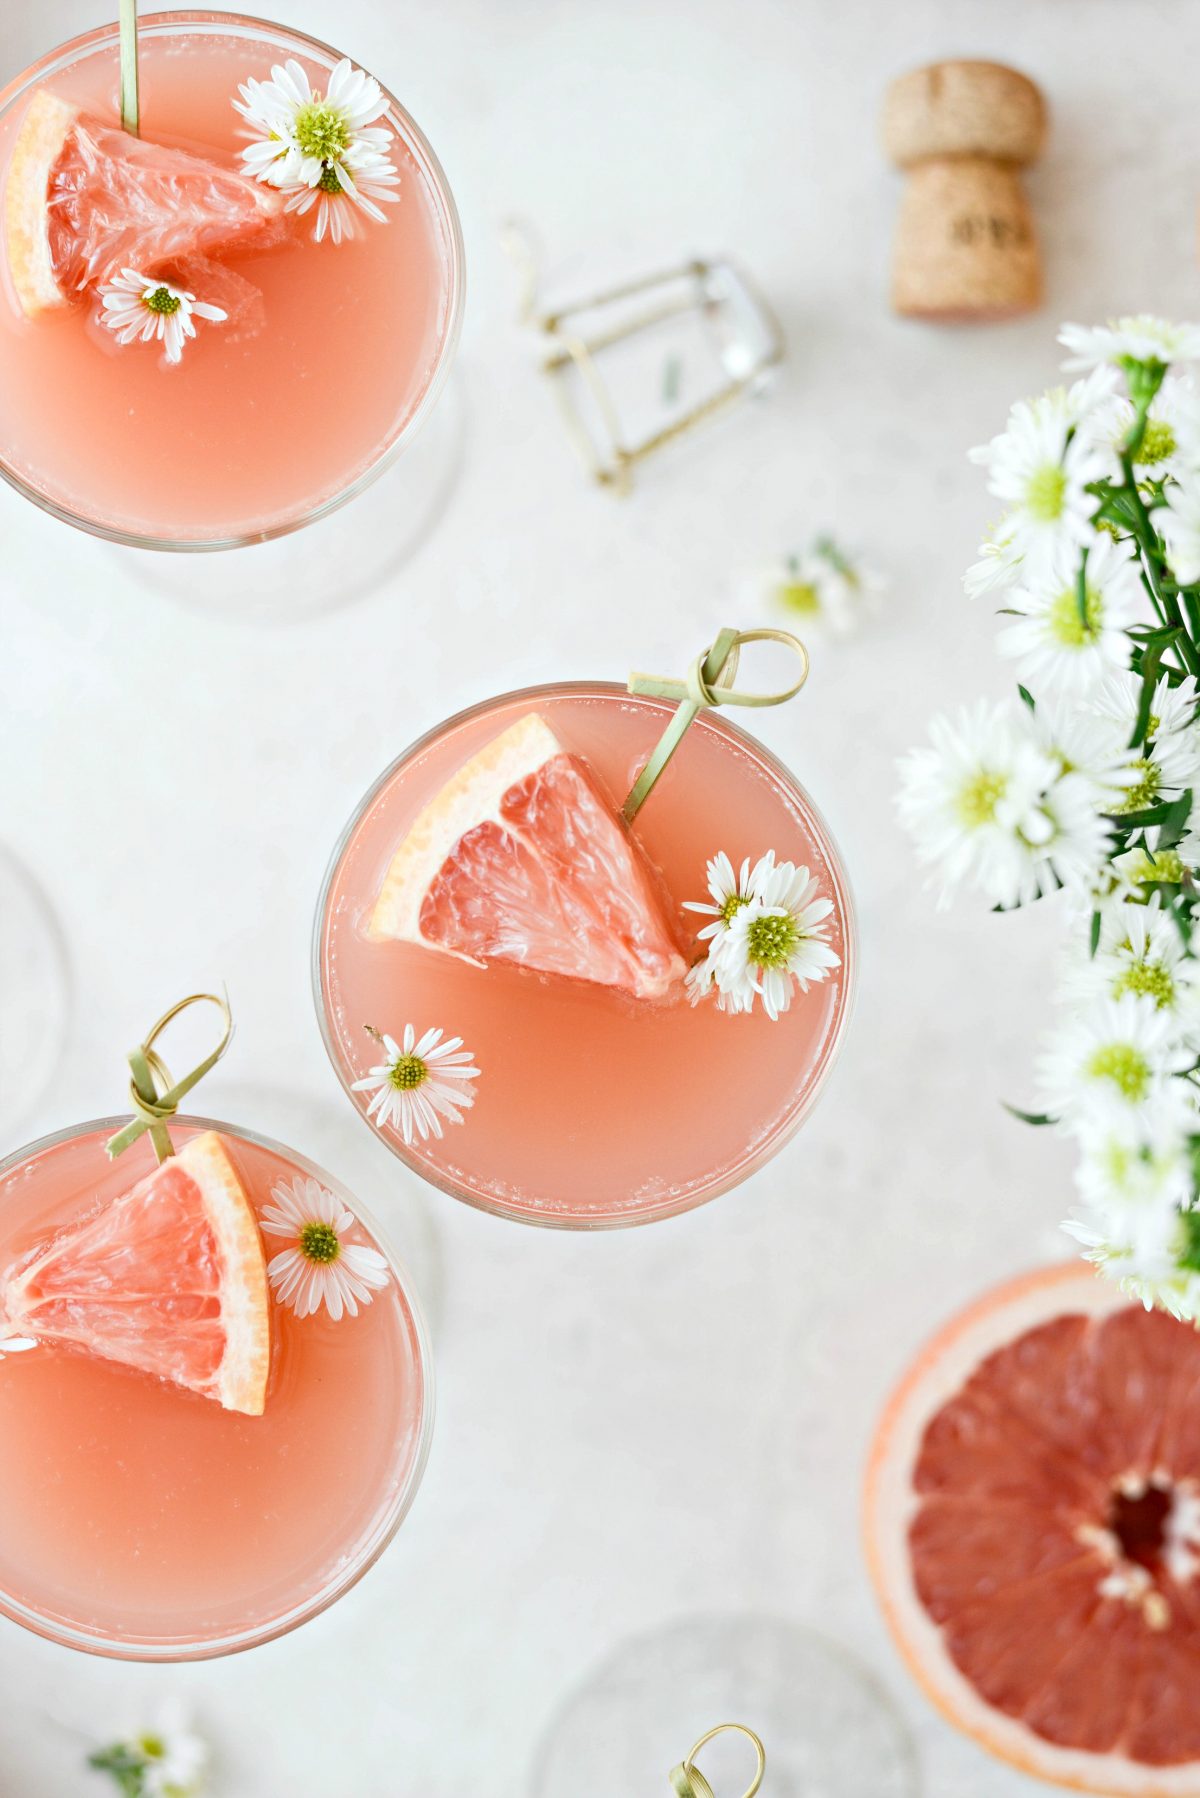 Mimose di pompelmo rosato l semplicementecrattura.com #adulti #bevanda #pompelmo #rose #mimosa #pasqua #brunch #mothersday